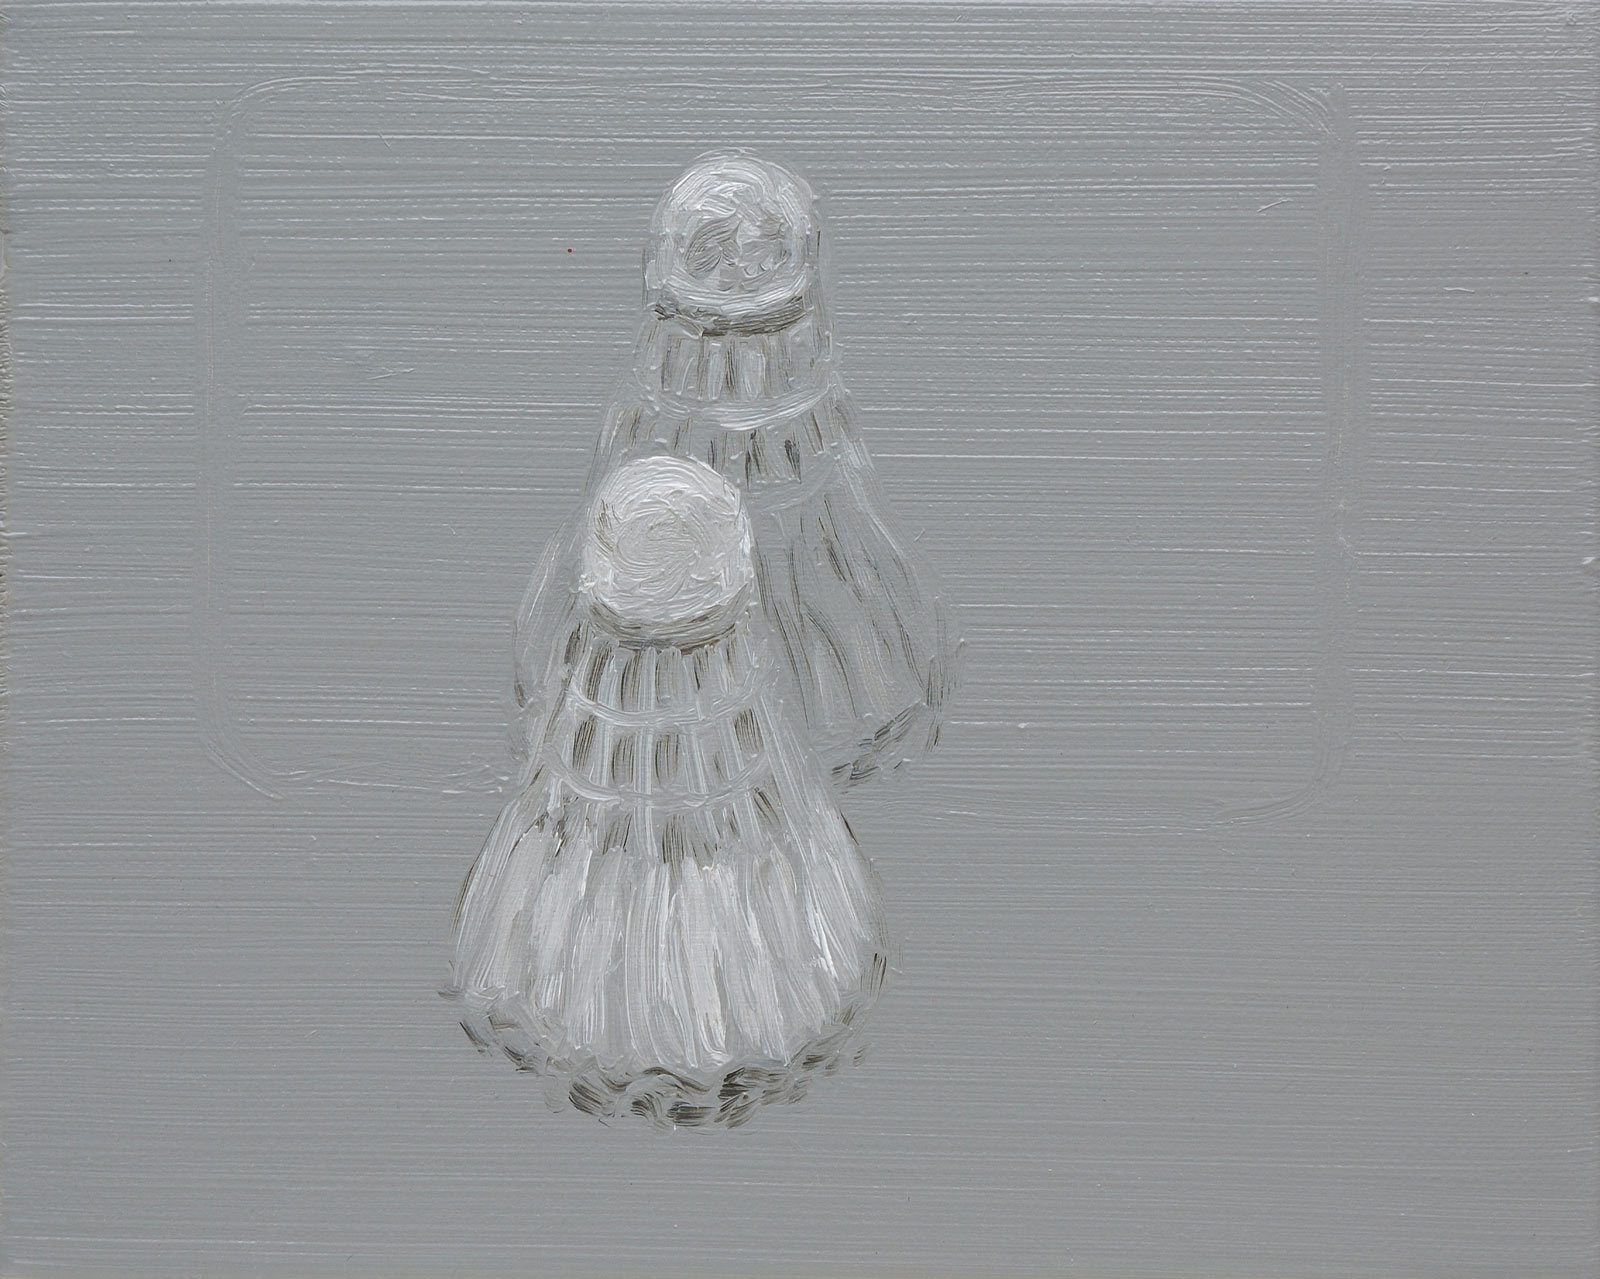 Katalin KÁLDI: Badminton in mirror, 2006, oil on canvas, 20 x 25 cm